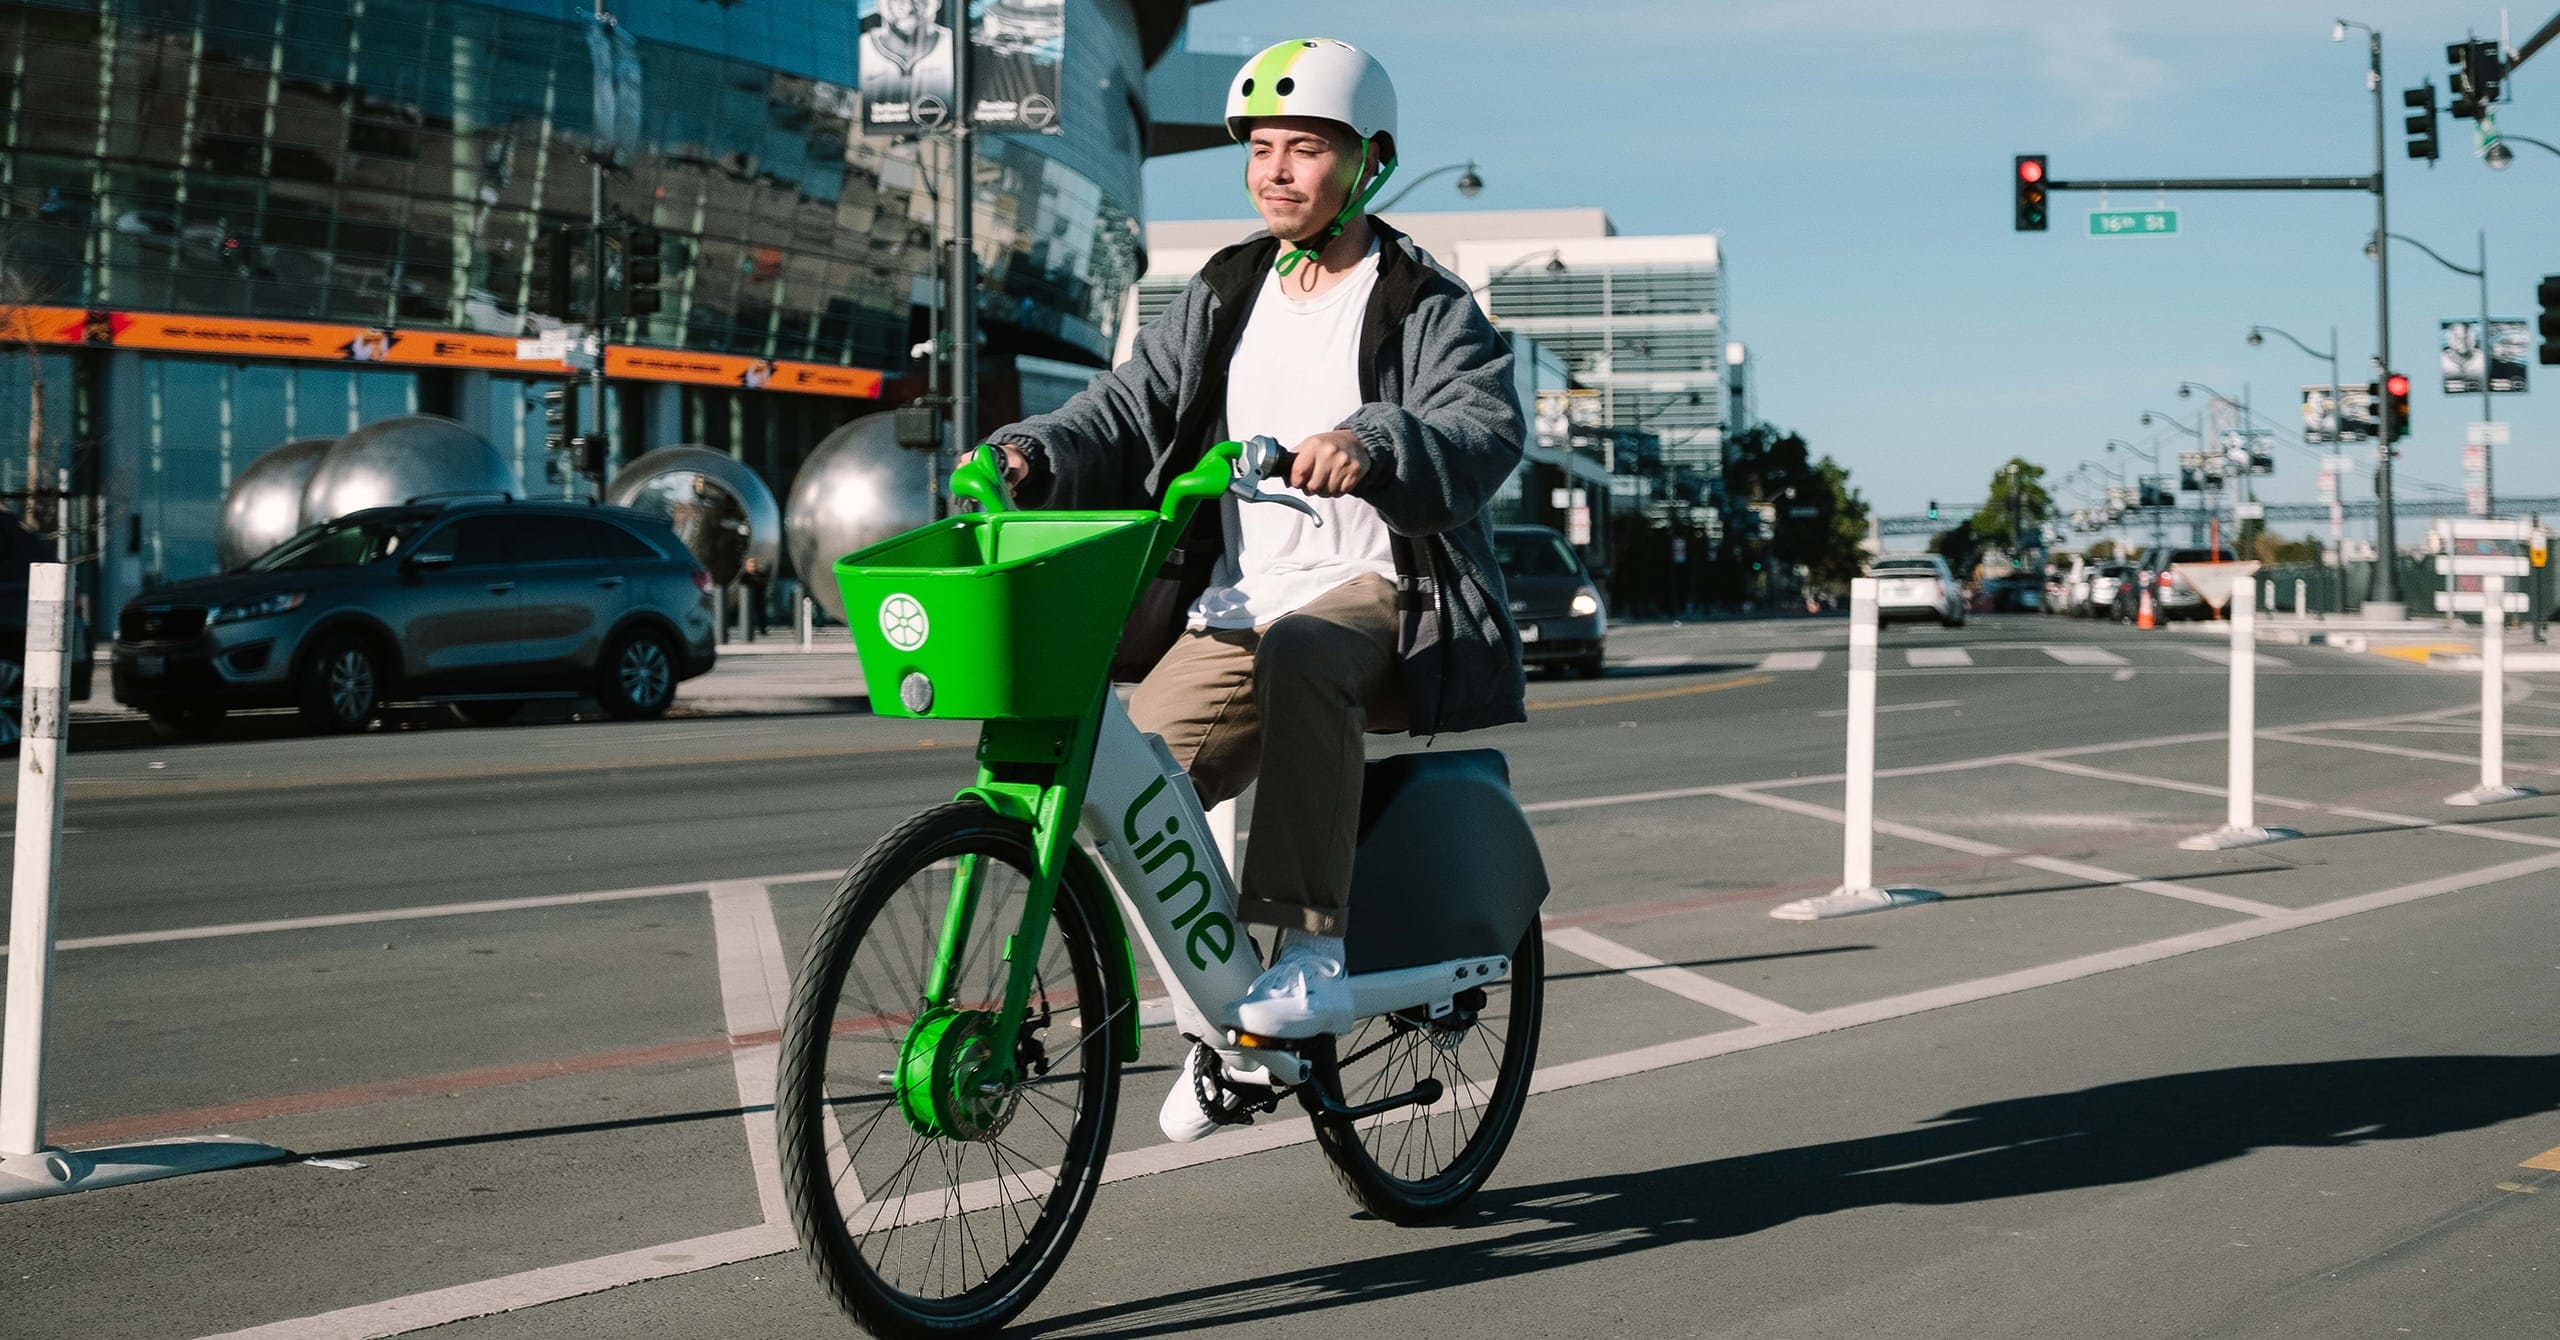 Lime : Des opportunités d'emploi passionnantes dans la mobilité verte!